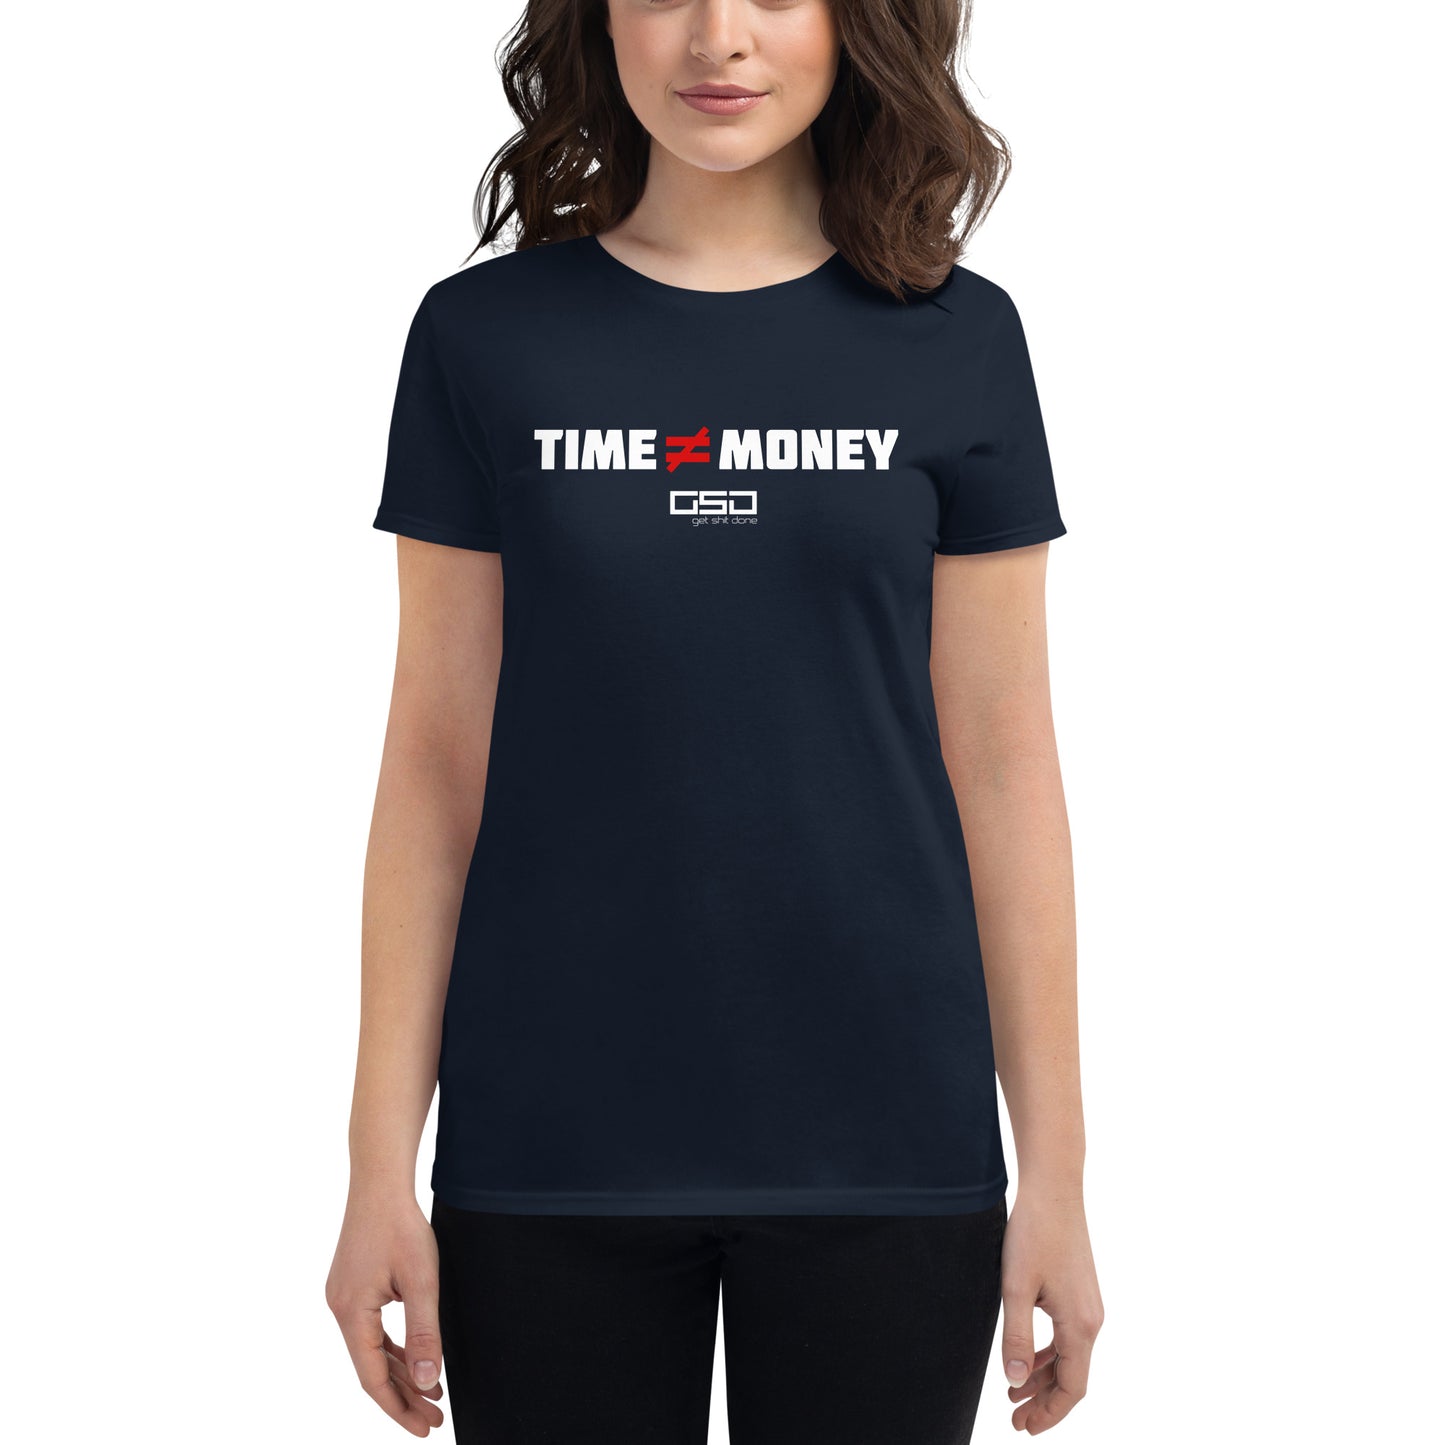 Time ≠ Money-Women's short sleeve t-shirt